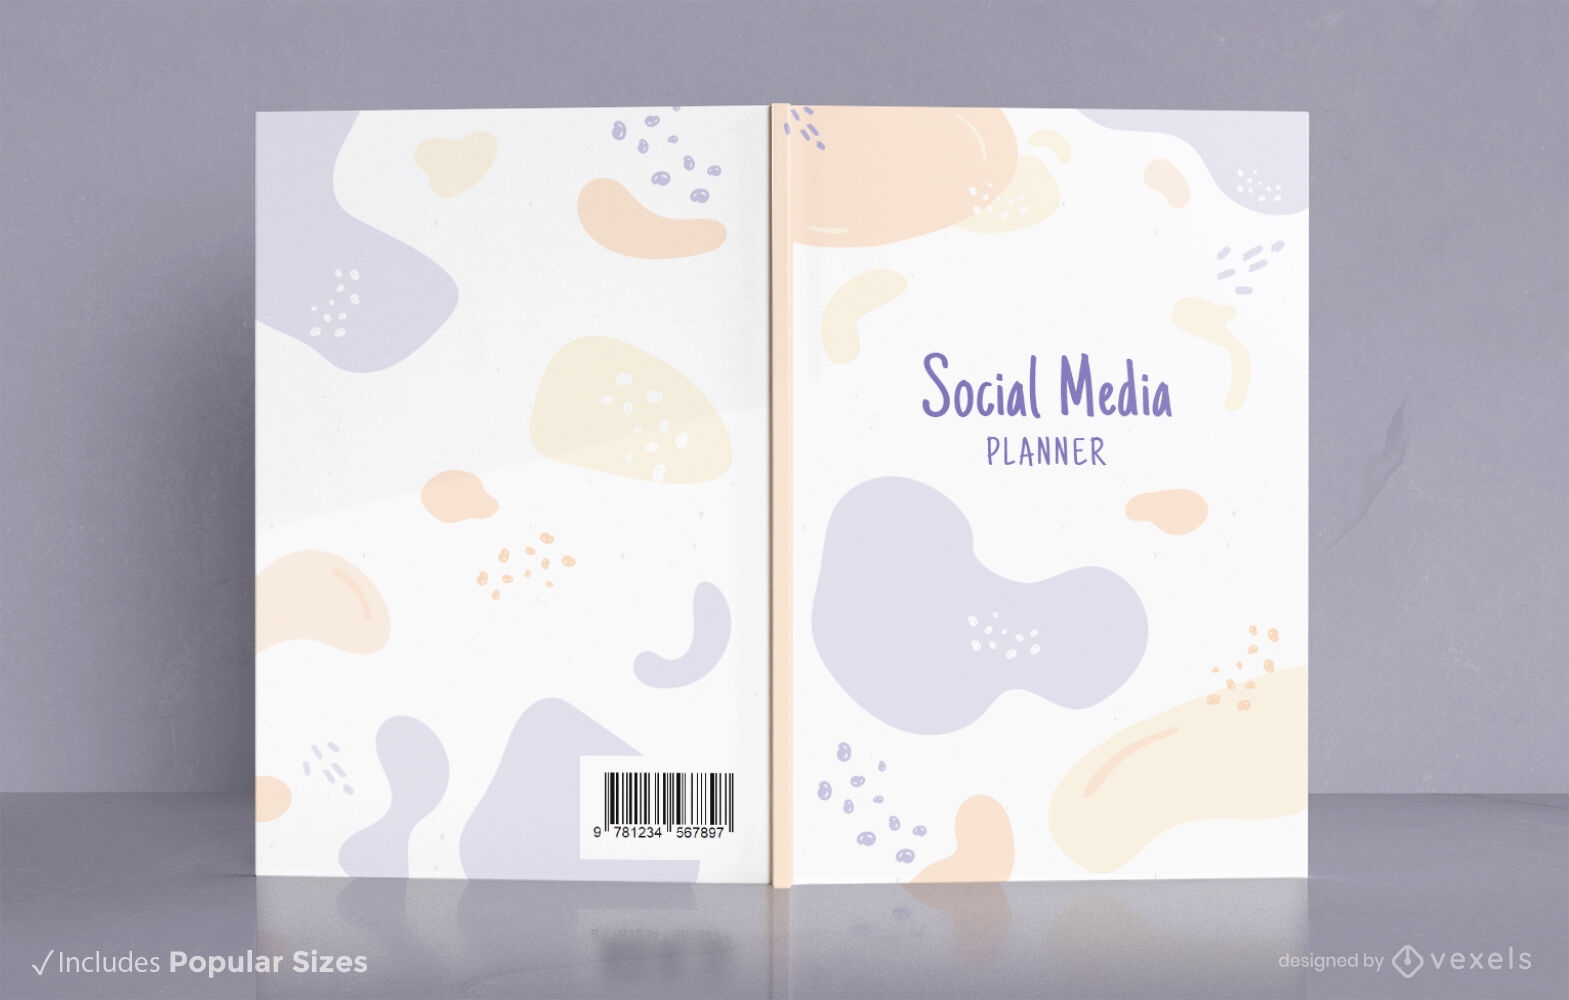 Abstract social media book cover design